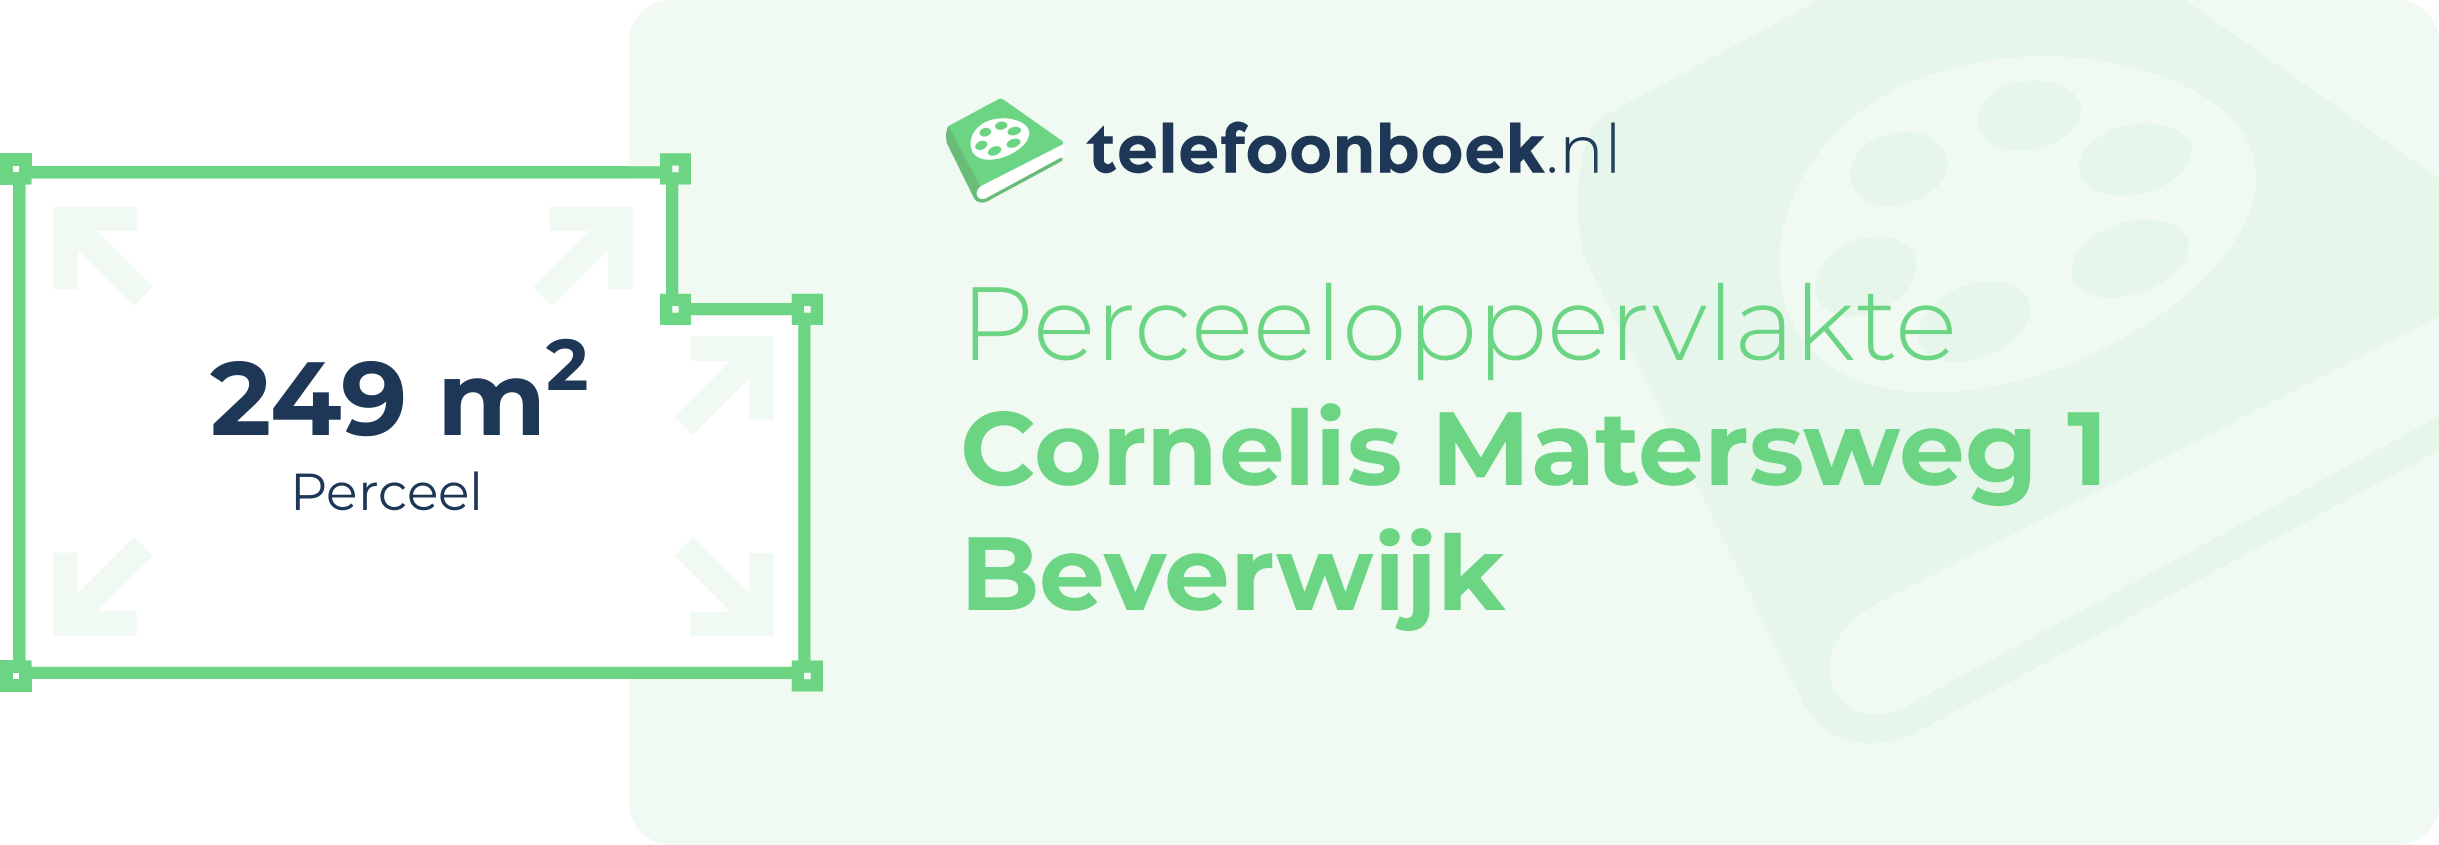 Perceeloppervlakte Cornelis Matersweg 1 Beverwijk